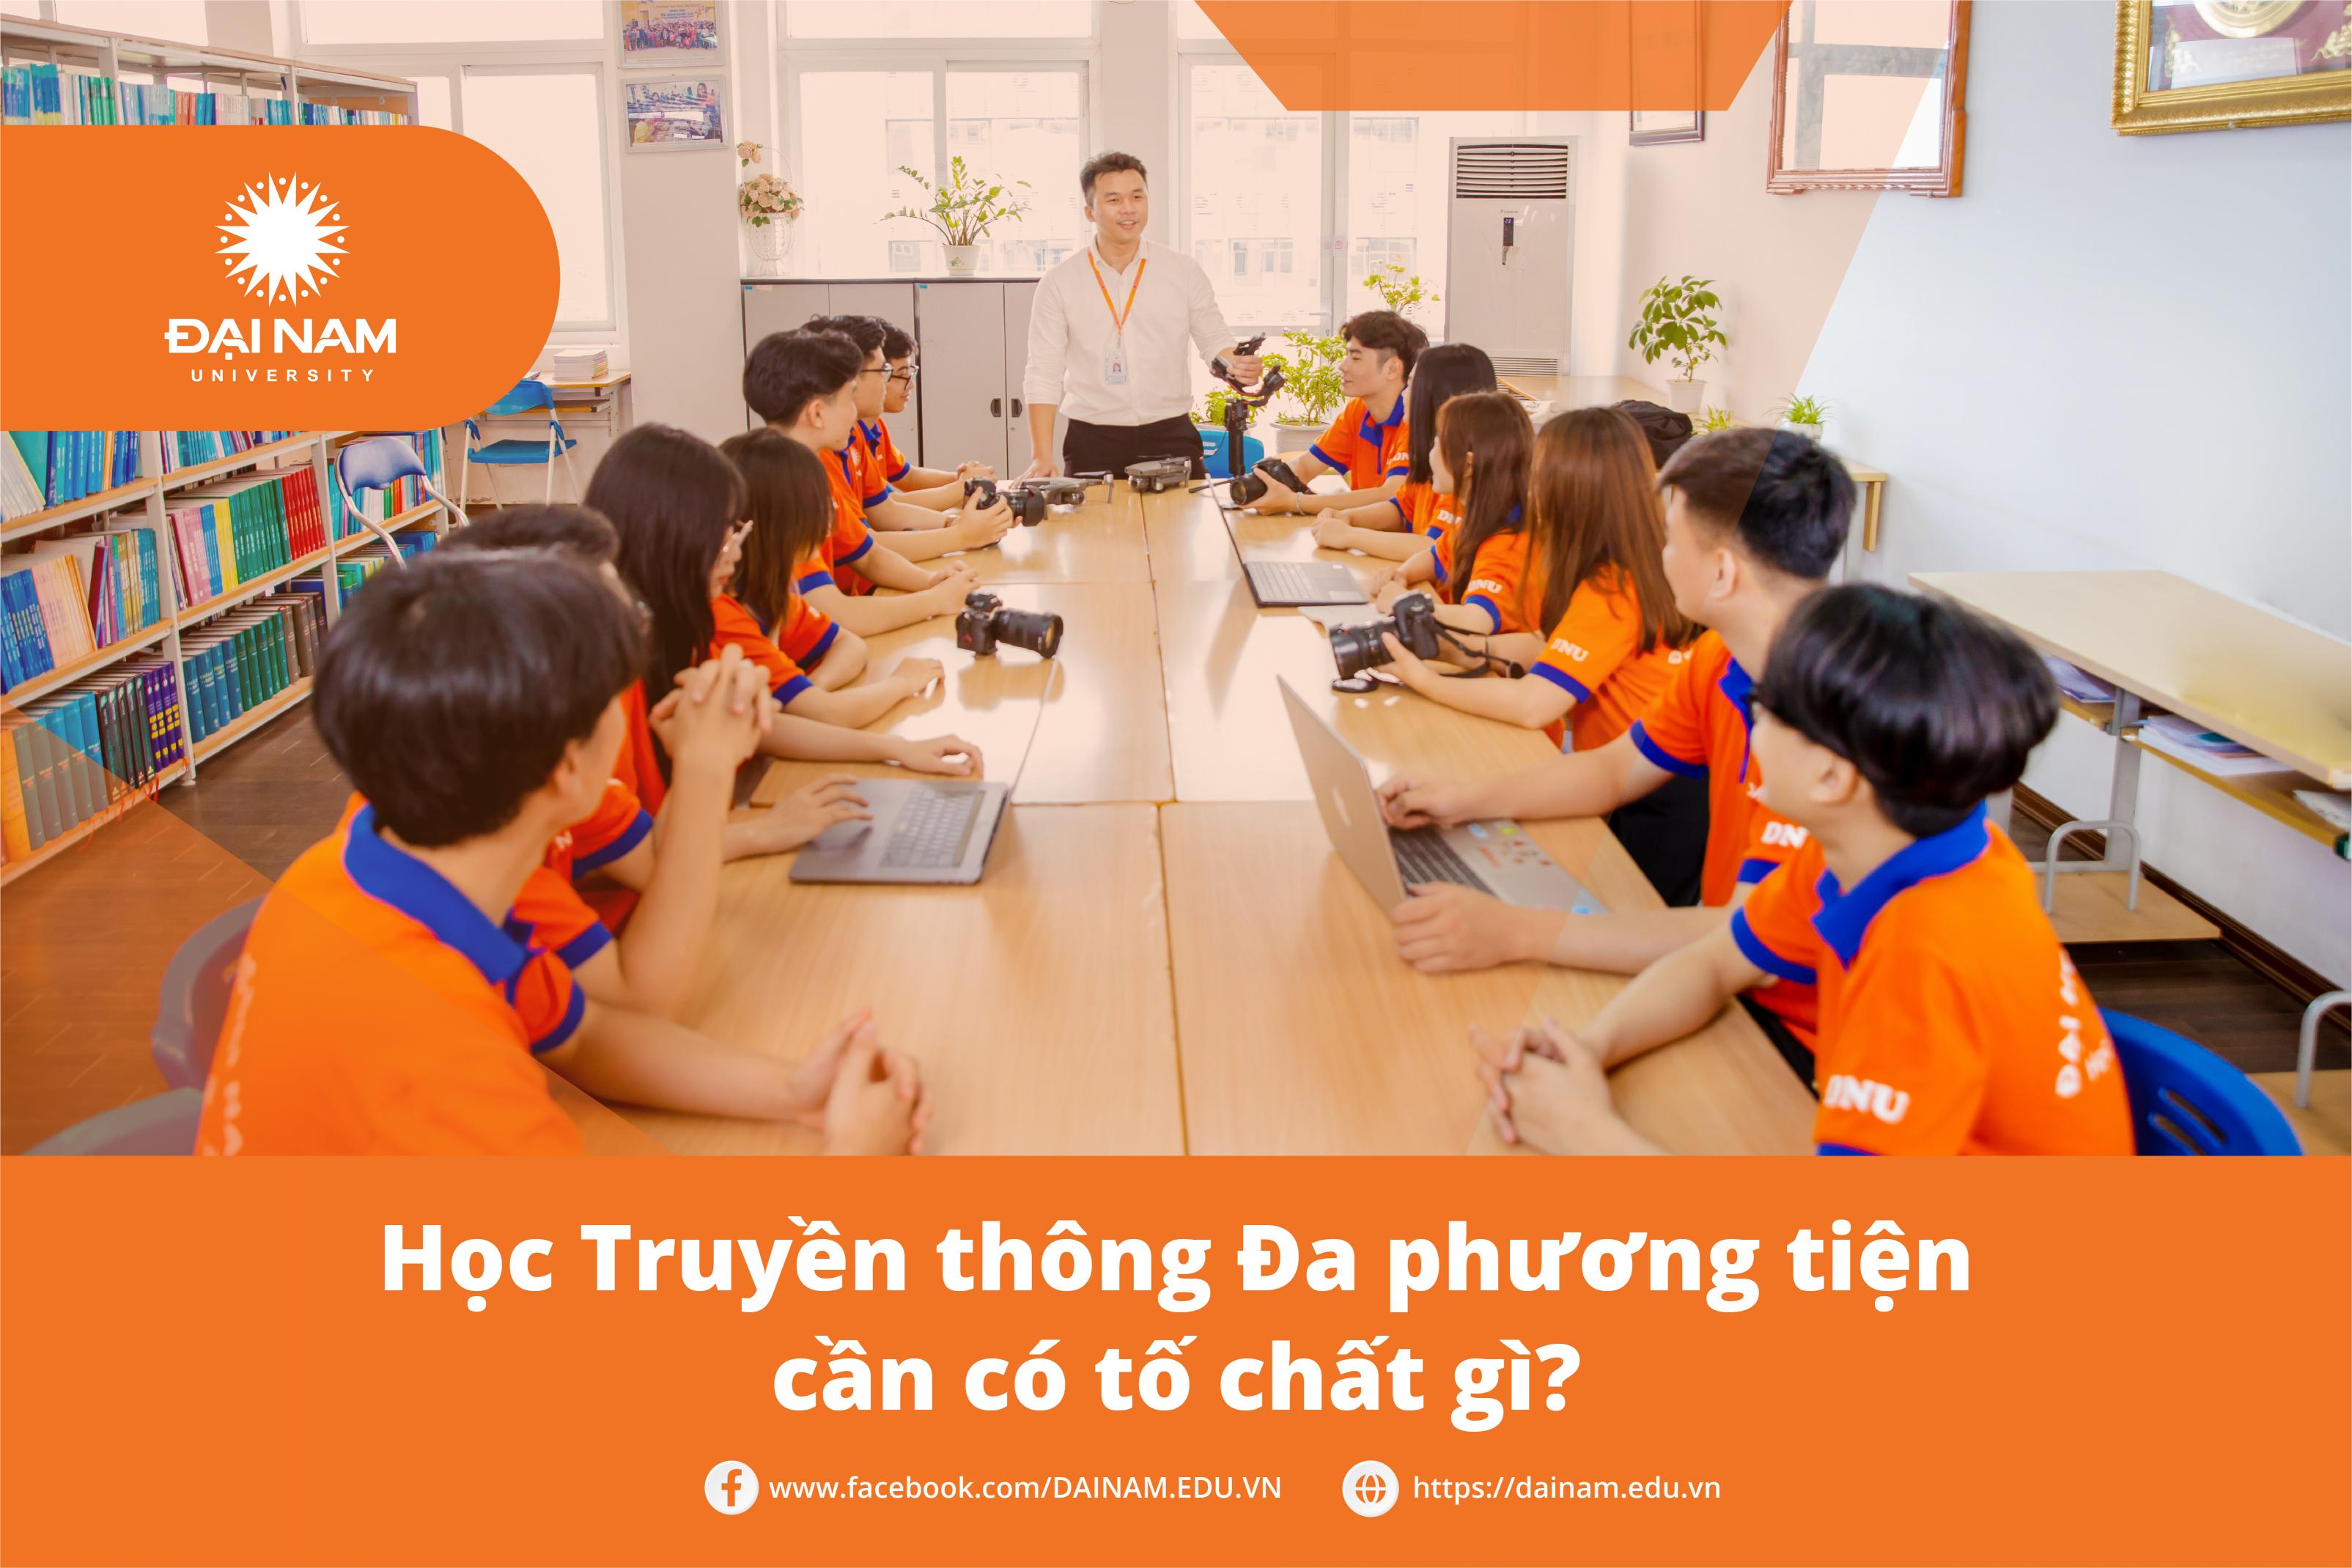 giai-ma-to-chat-can-co-khi-theo-duoi-nganh-truyen-thong-da-phuong-tien